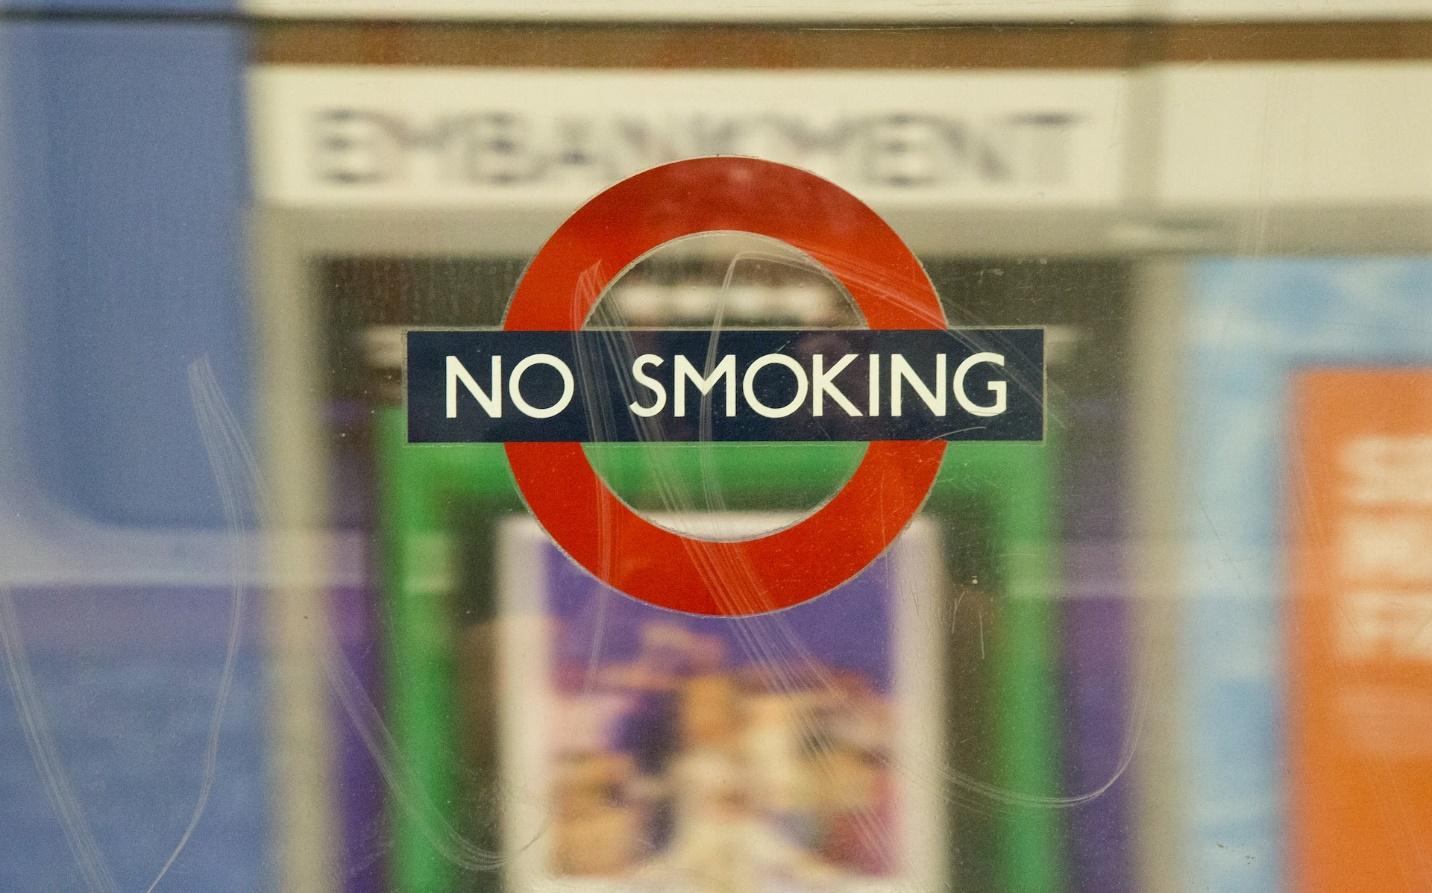 A no smoking signage